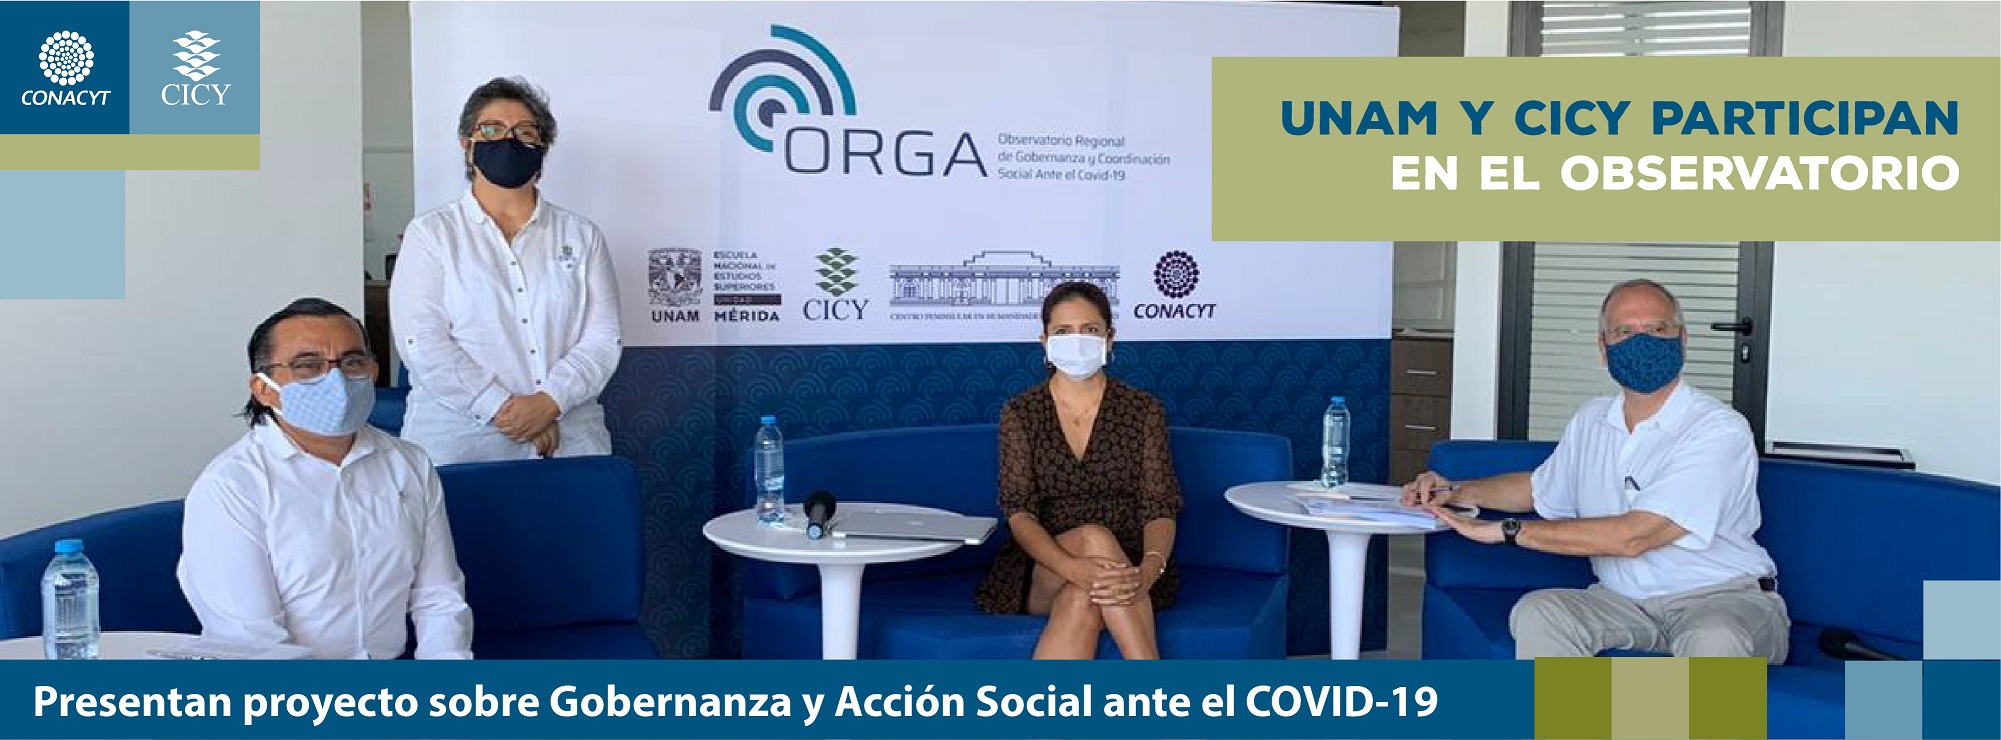 Presentan proyecto sobre Gobernanza y Acción Social ante el COVID-19